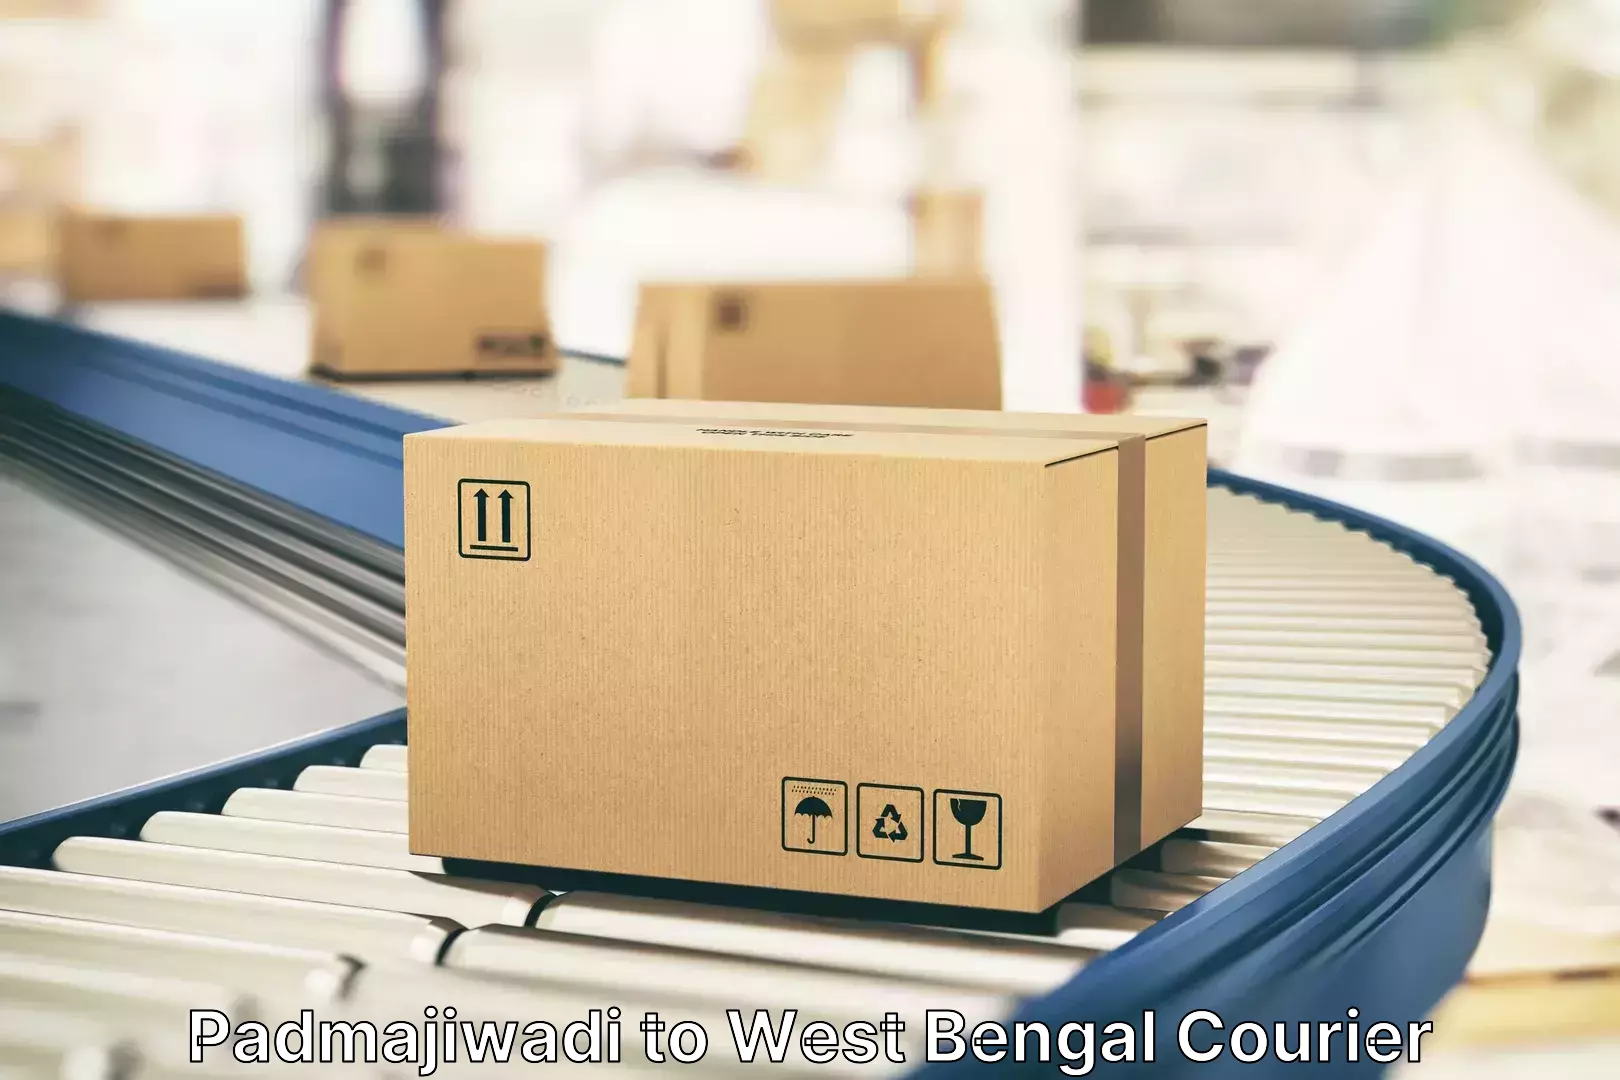 Luggage delivery operations Padmajiwadi to Maheshtala